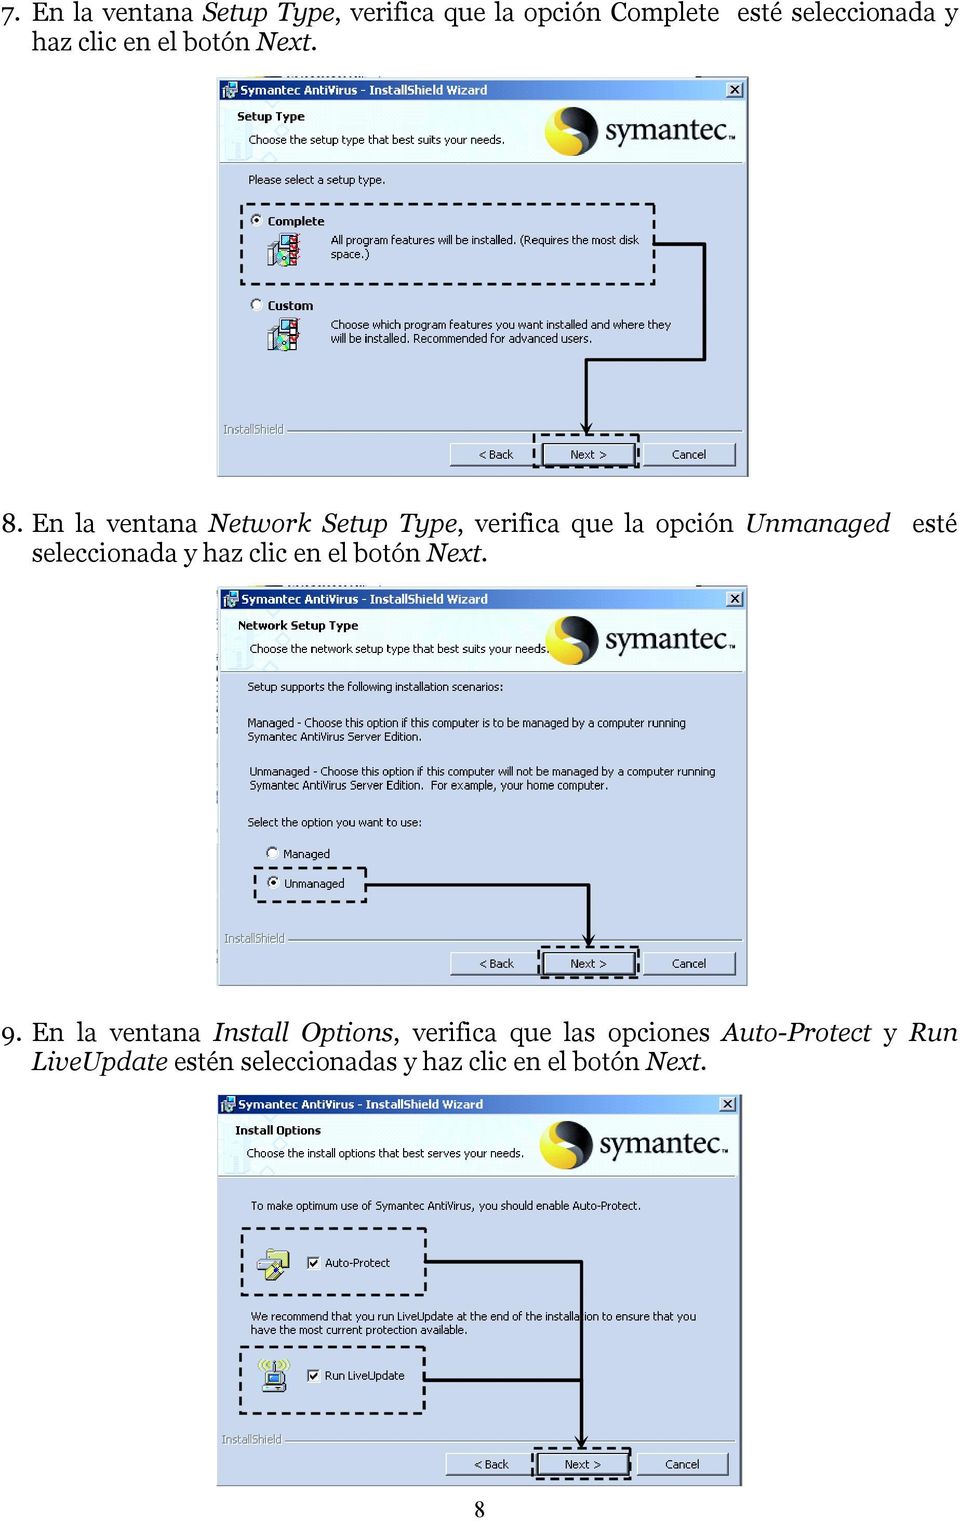 En la ventana Network Setup Type, verifica que la opción Unmanaged esté seleccionada y haz